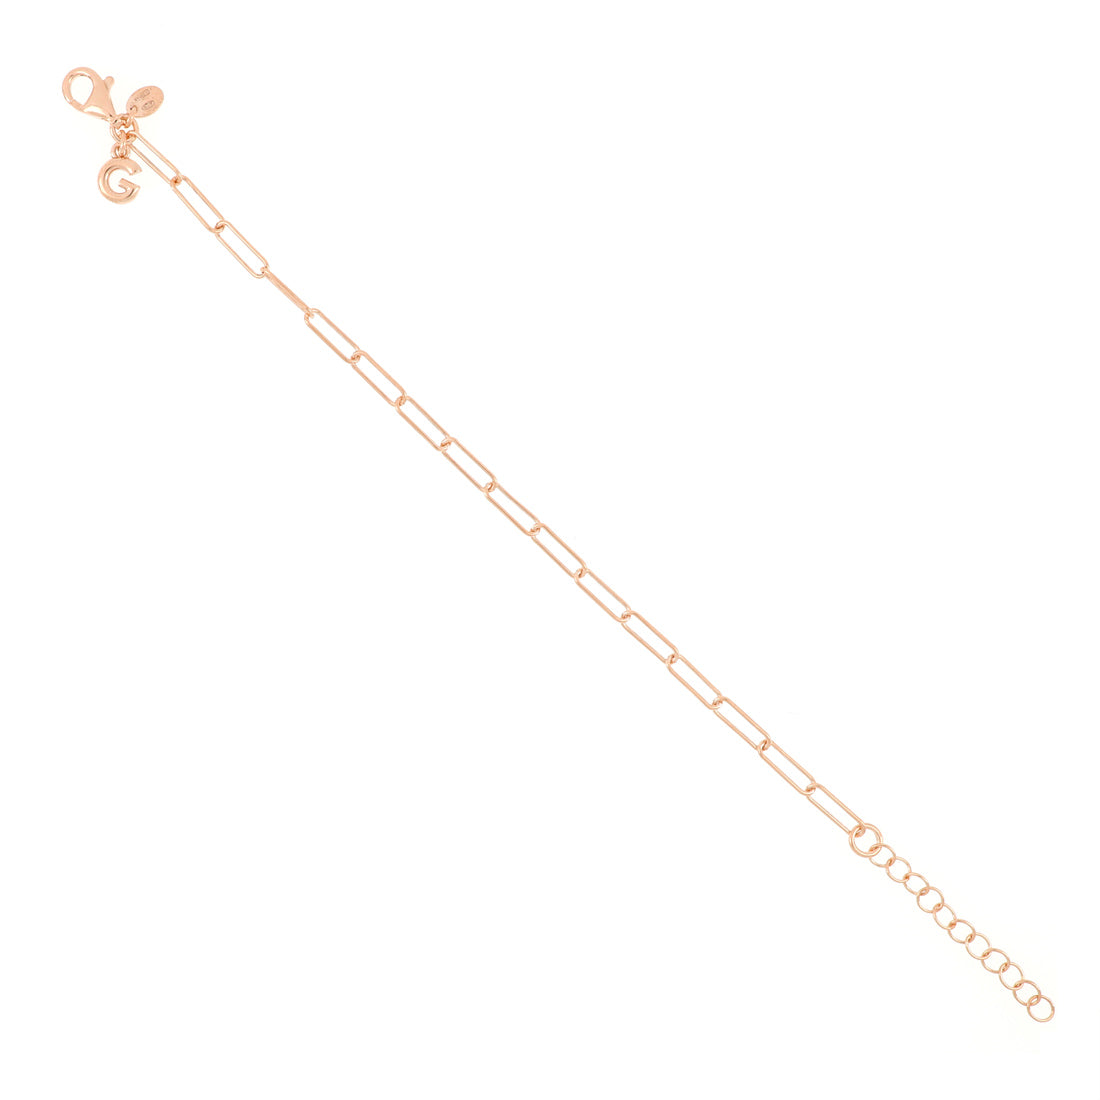 Bracciale in argento placcato oro rosa realizzato con maglie rettangolari molto leggere e sottili